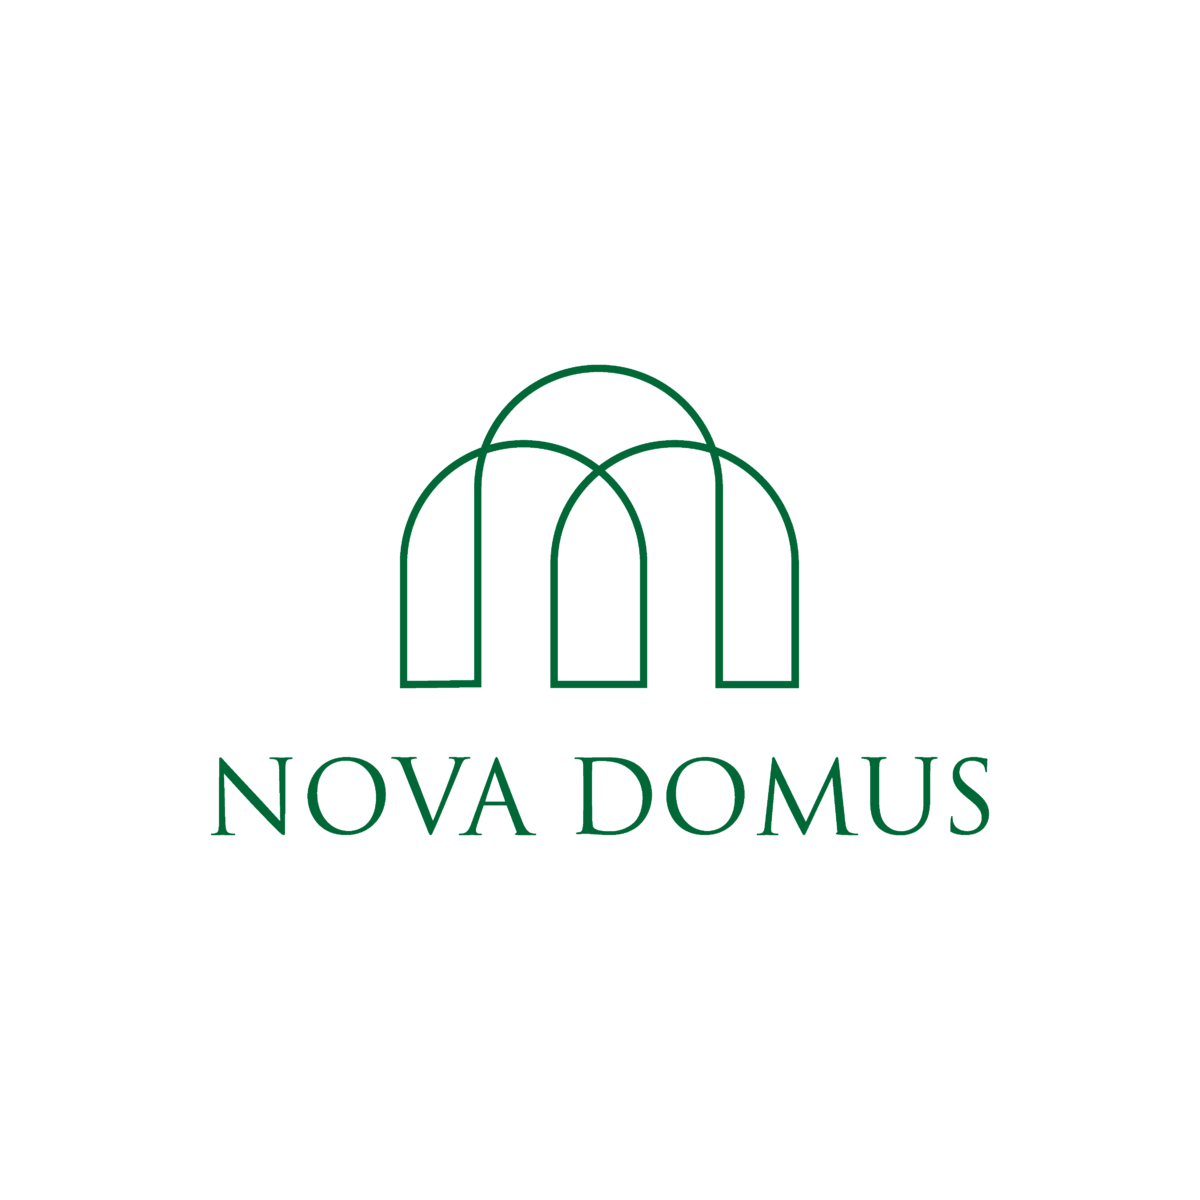 Nova Domus